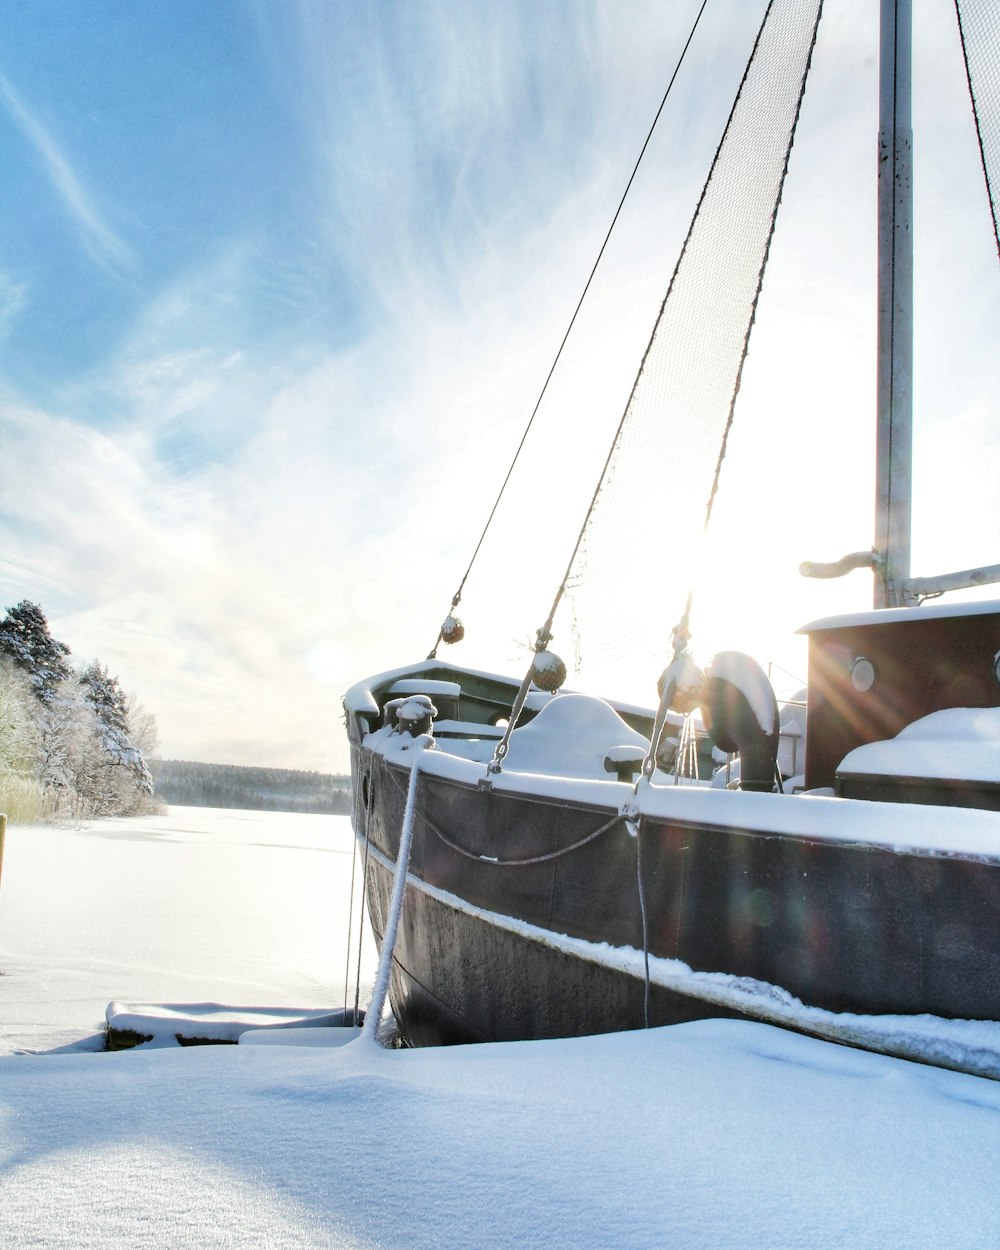 weißes und braunes Boot tagsüber auf schneebedecktem Boden